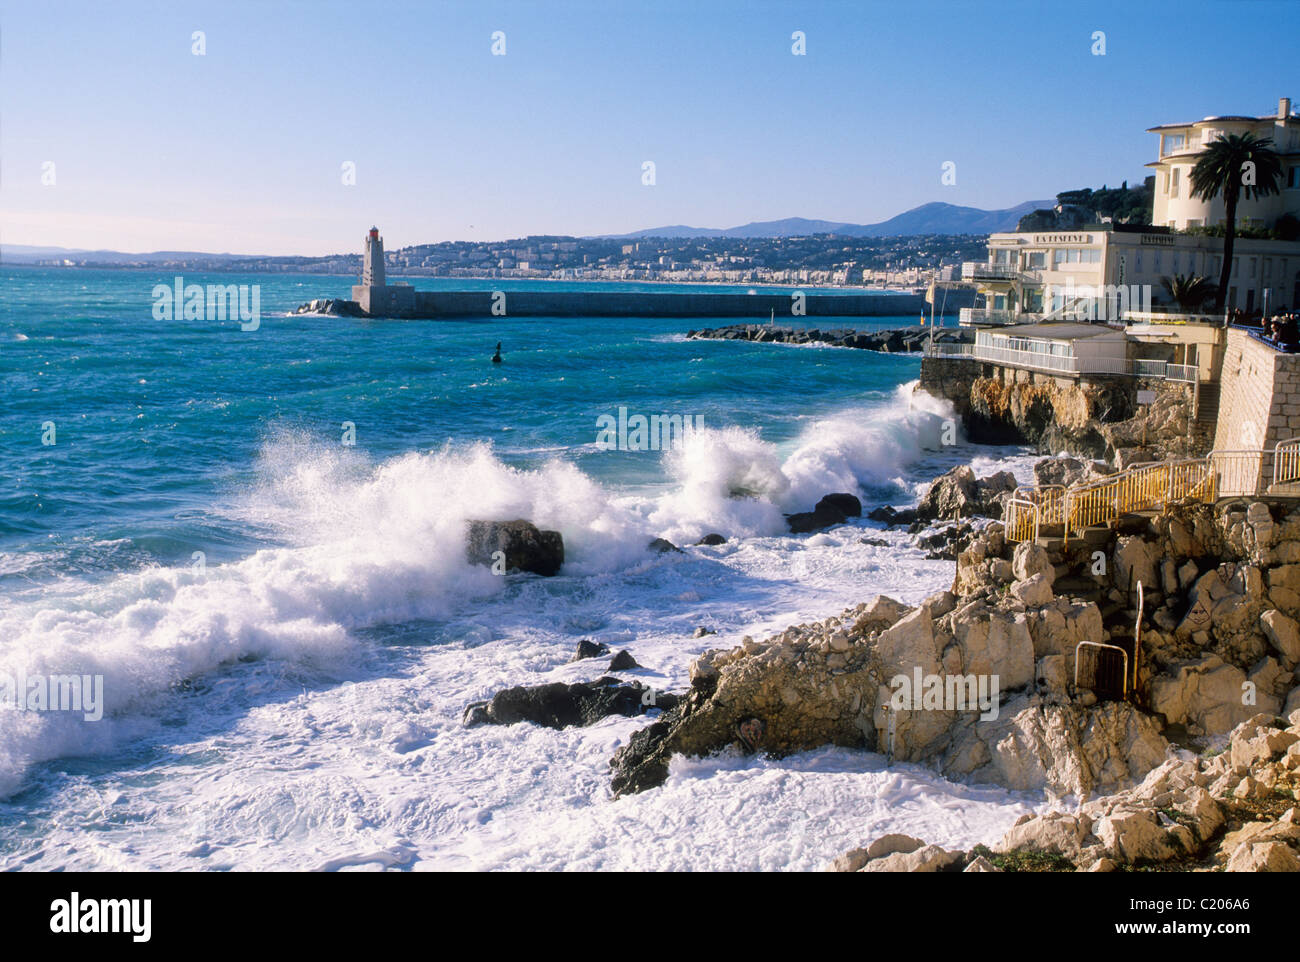 Mare mosso in Nizza vicino alla spiaggia chiamata "La Reserve" Foto Stock